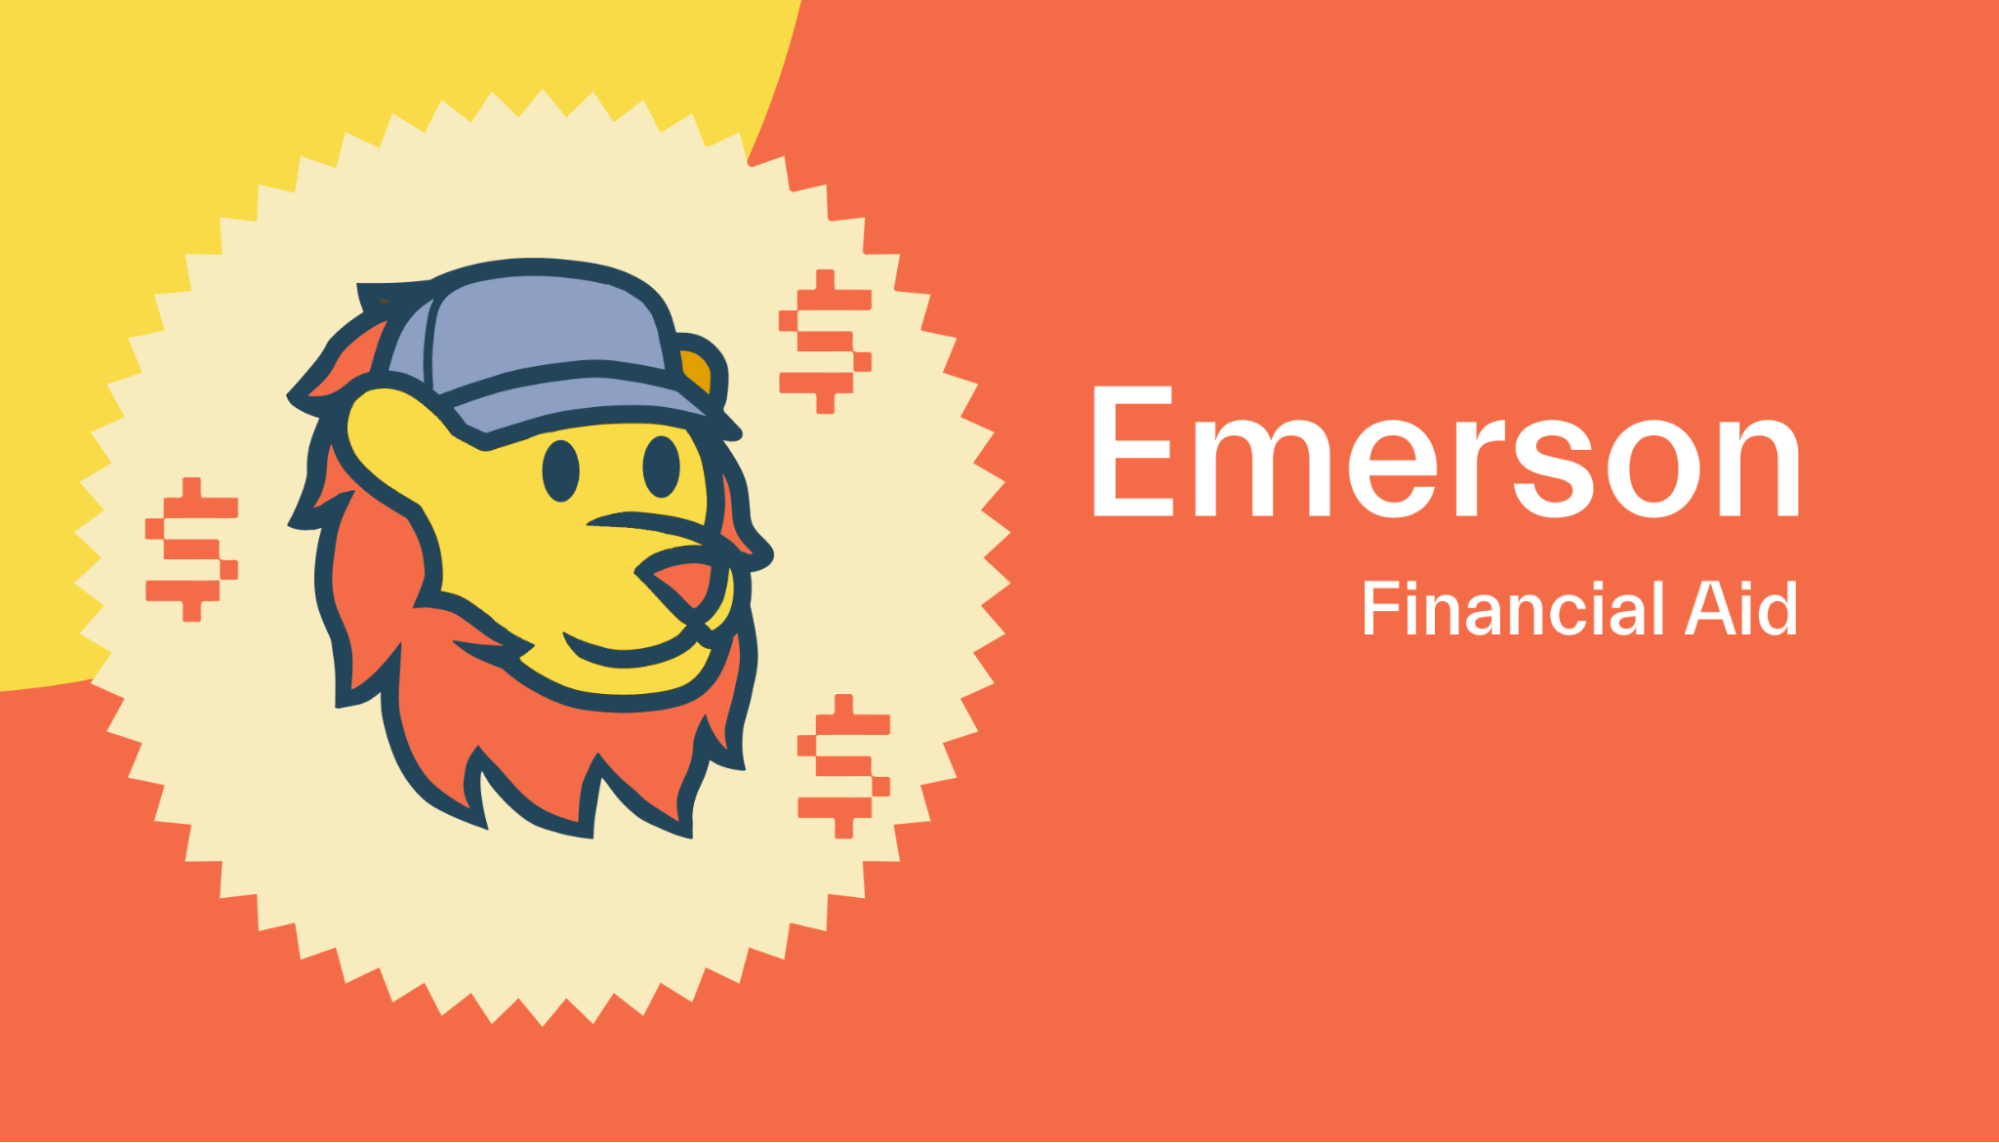 Financial aid at Emerson